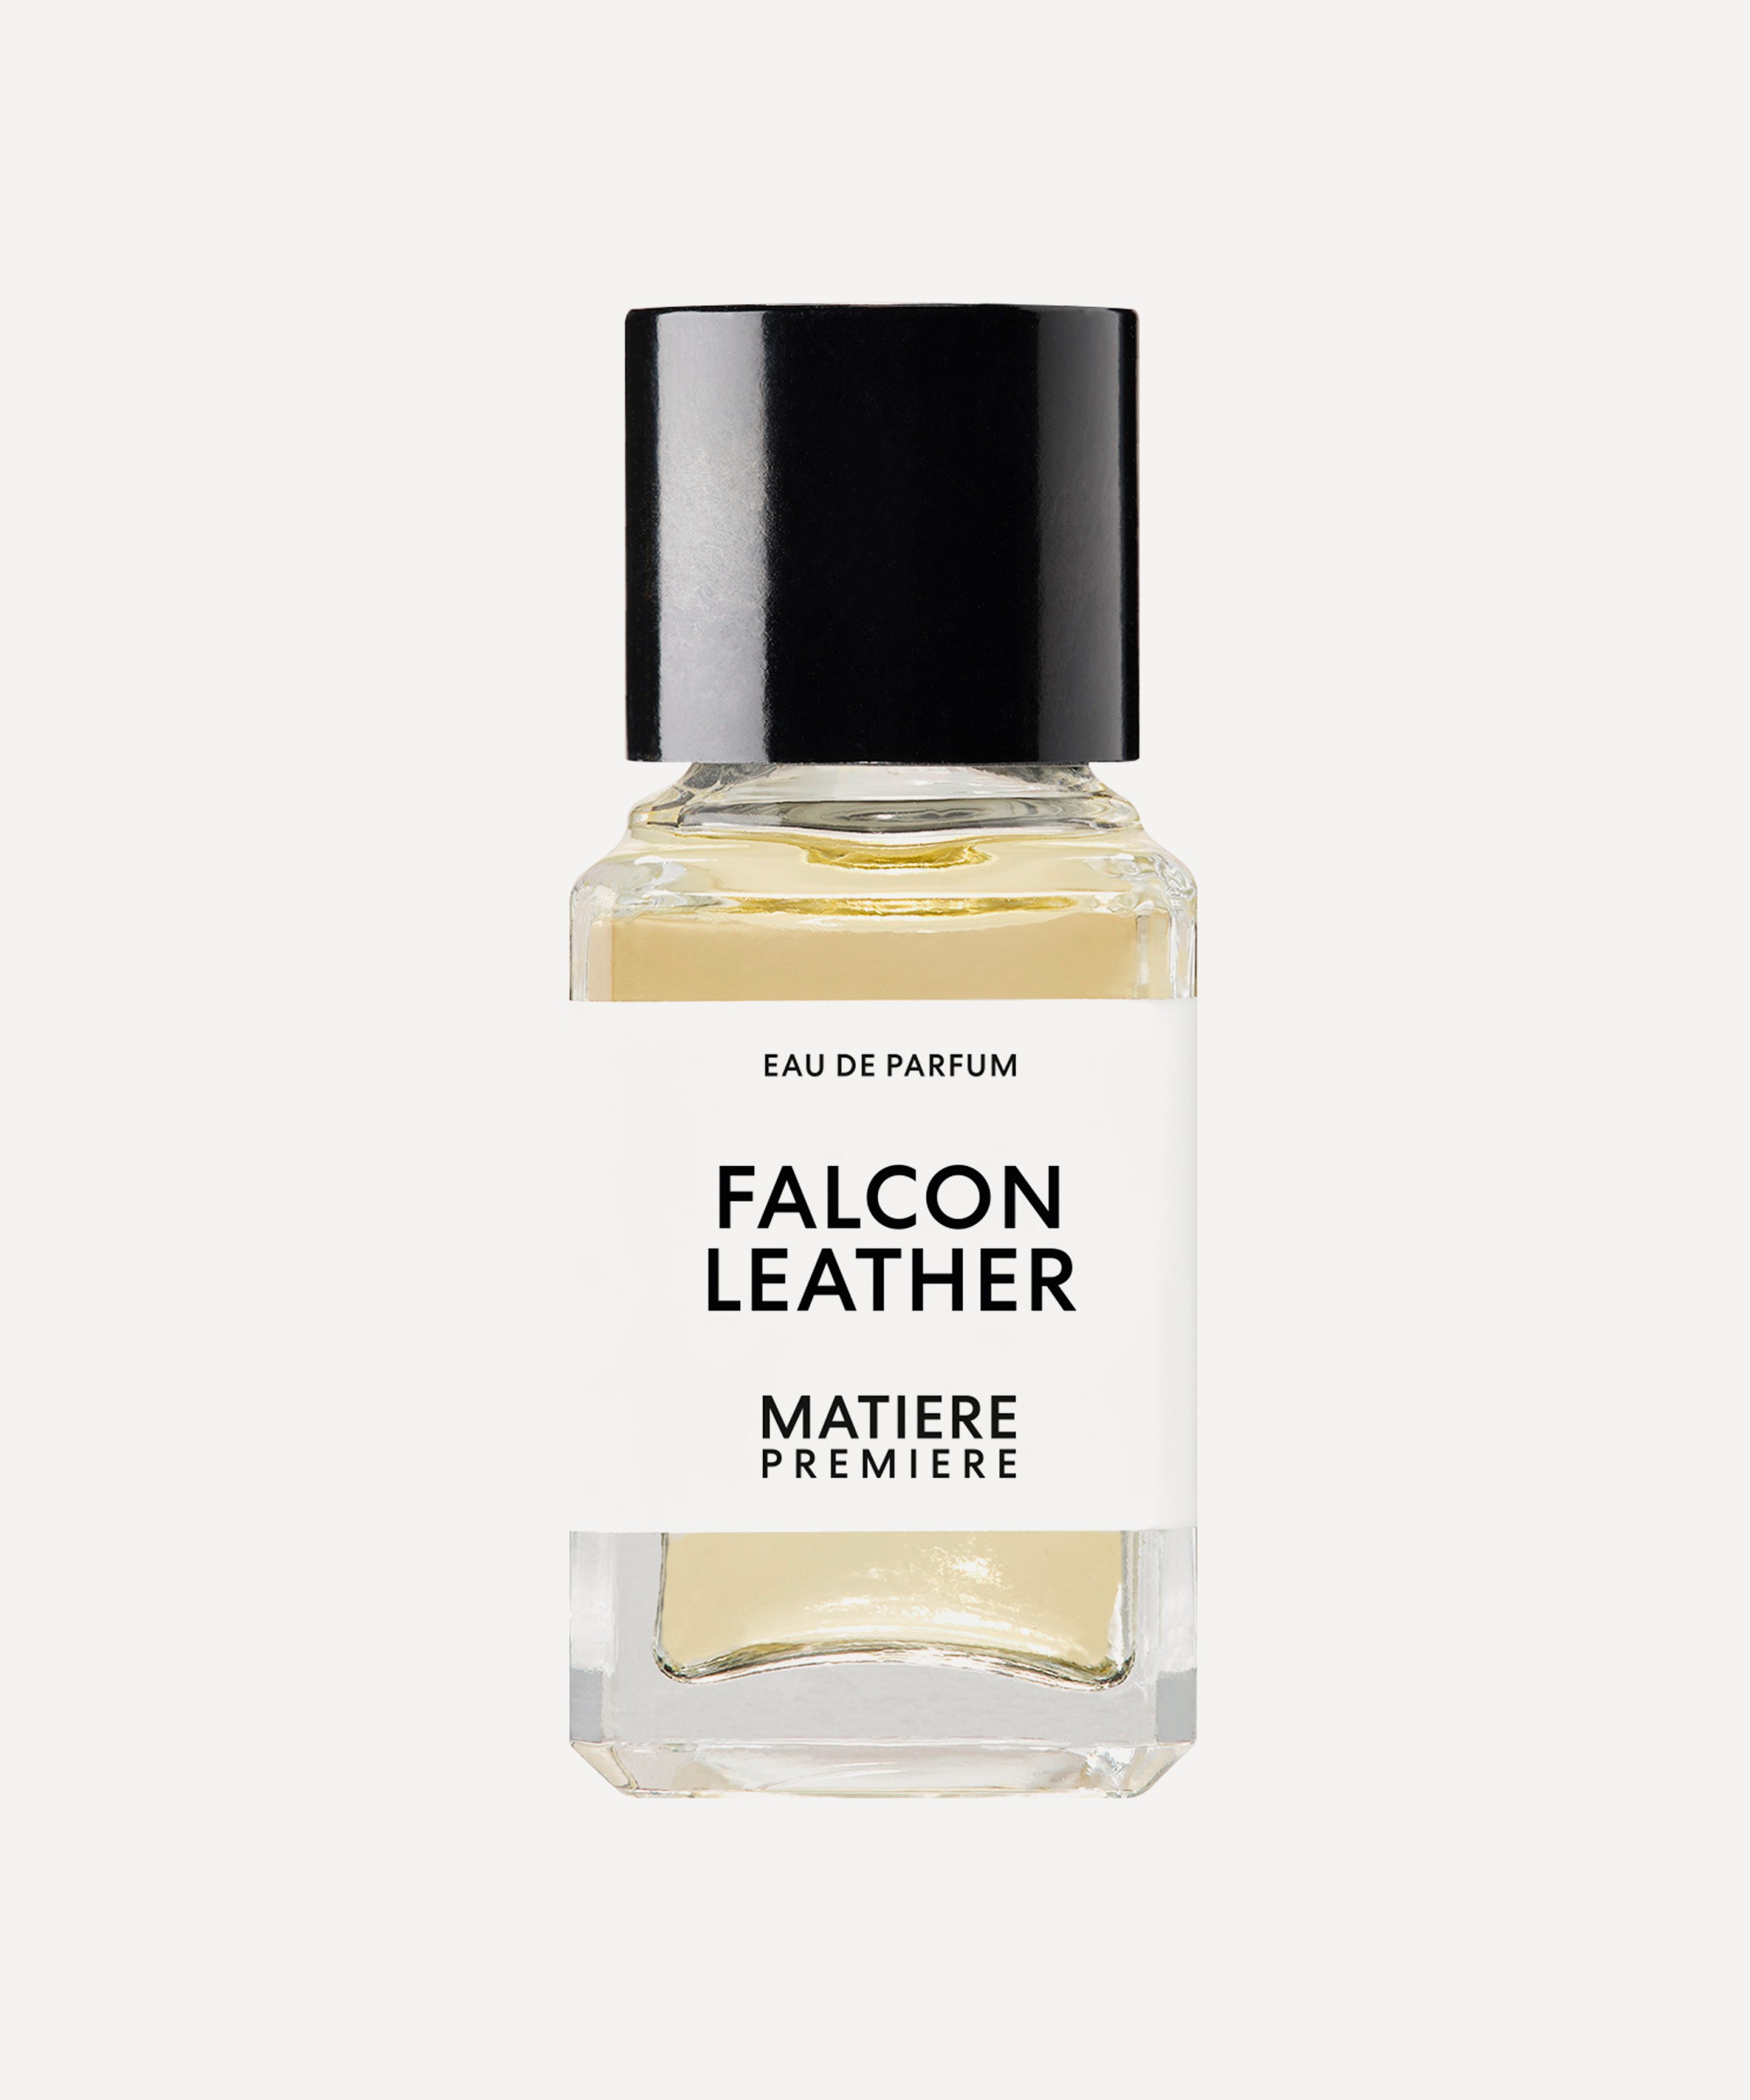 MATIERE PREMIERE - Falcon Leather Eau de Parfum 6ml